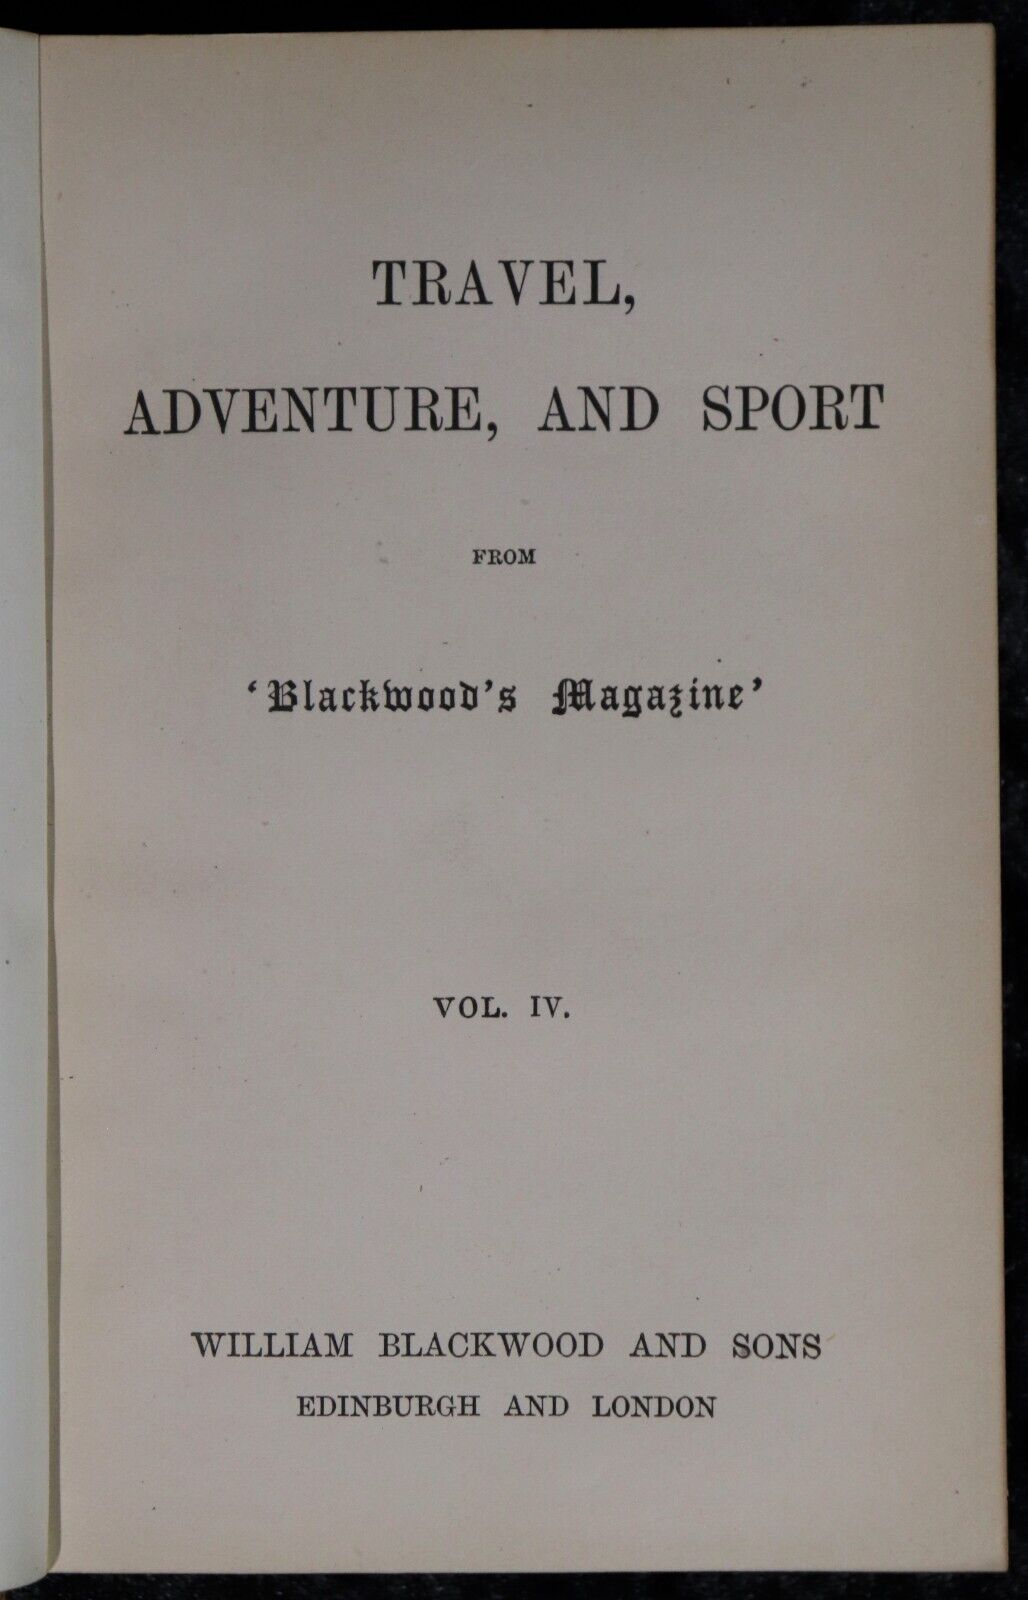 Travel, Adventure & Sport - c1880 - 6 Vols. Antiquarian Travel & Sport Books